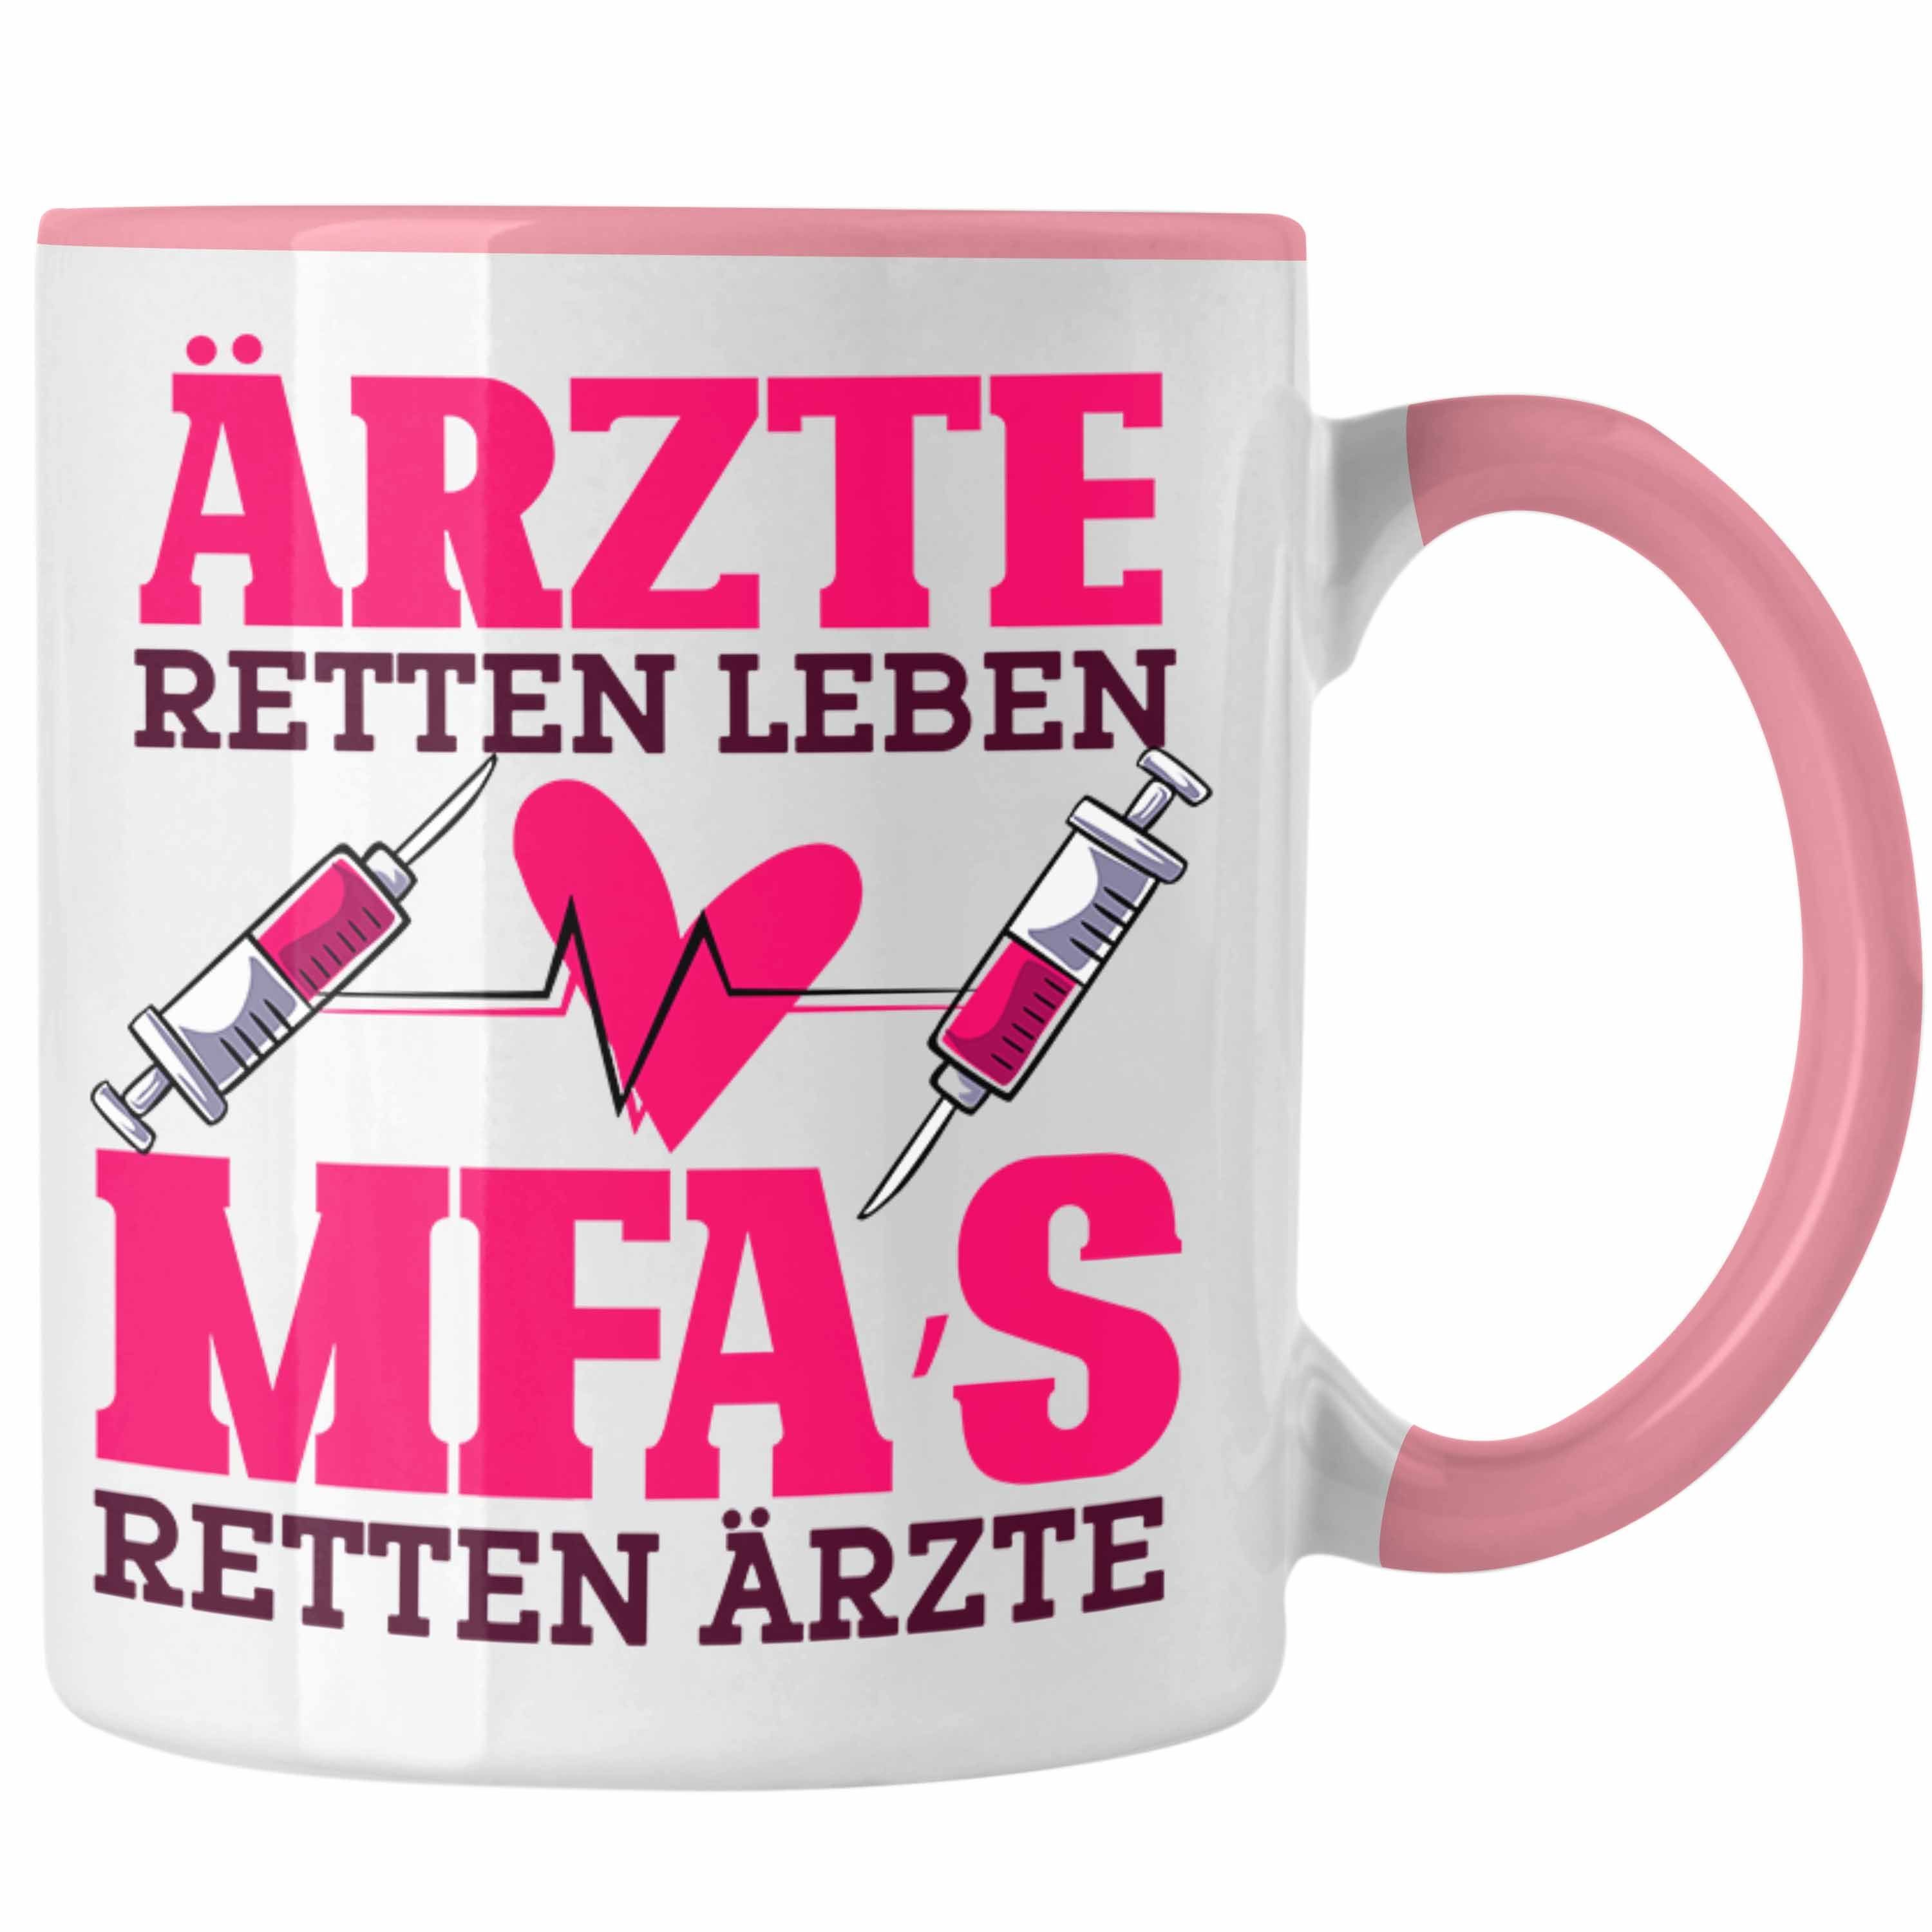 Trendation Tasse Lustige MFA Tasse Geschenk für Medizinische Fachangestellte Geschenkid Rosa